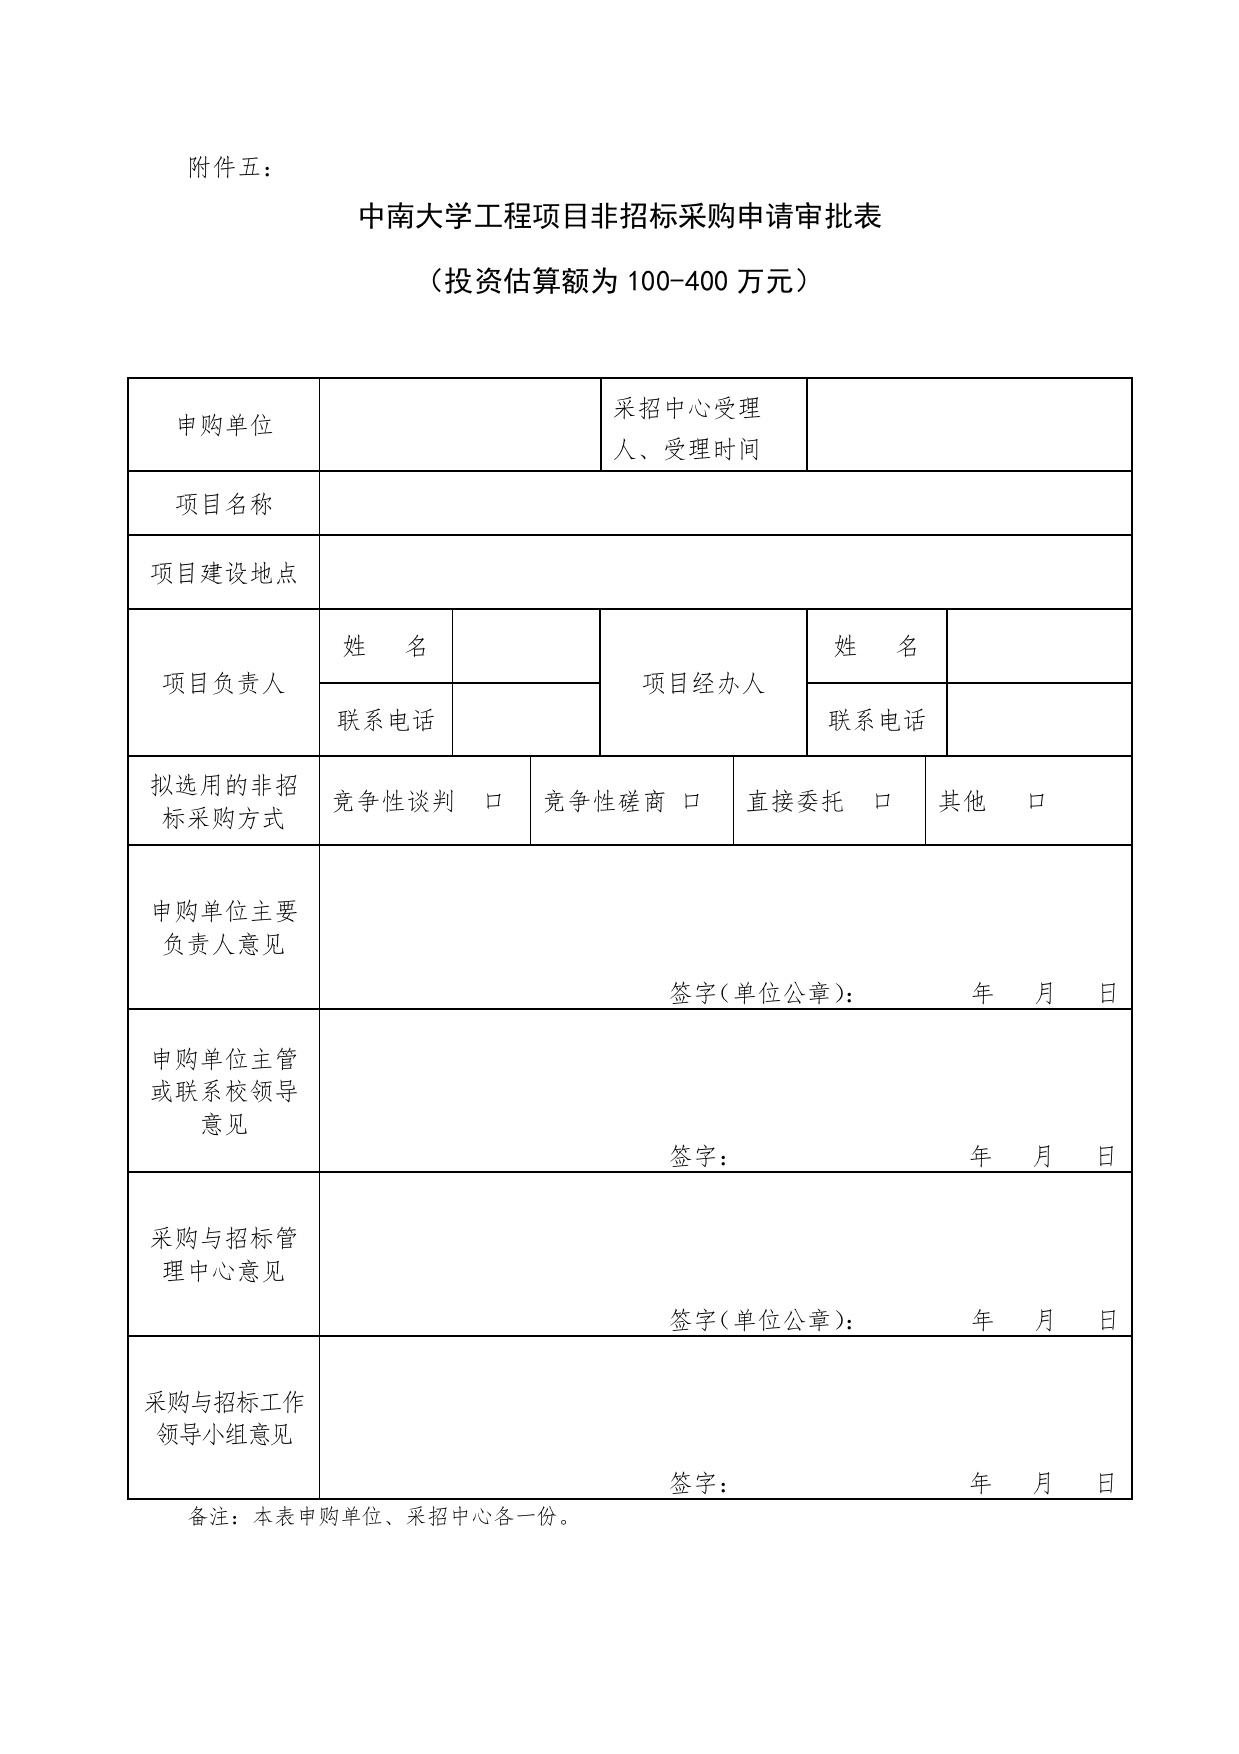 中南大学工程项目非招标采购申请表.jpg